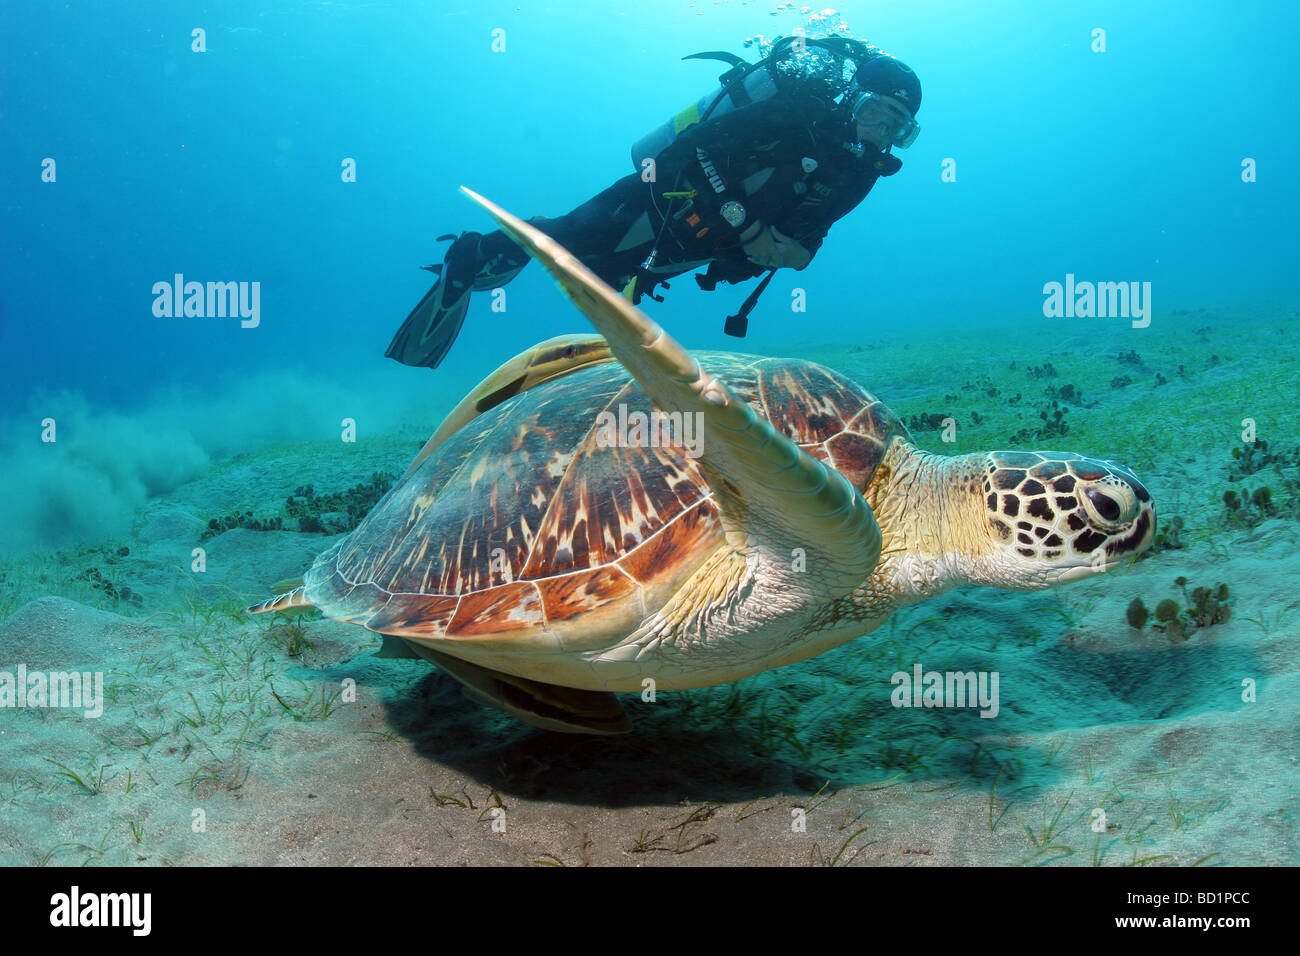 Incontro con una tartaruga embricata mentre le immersioni nel Mar Rosso nei pressi di Marsa Alam in Egitto Foto Stock